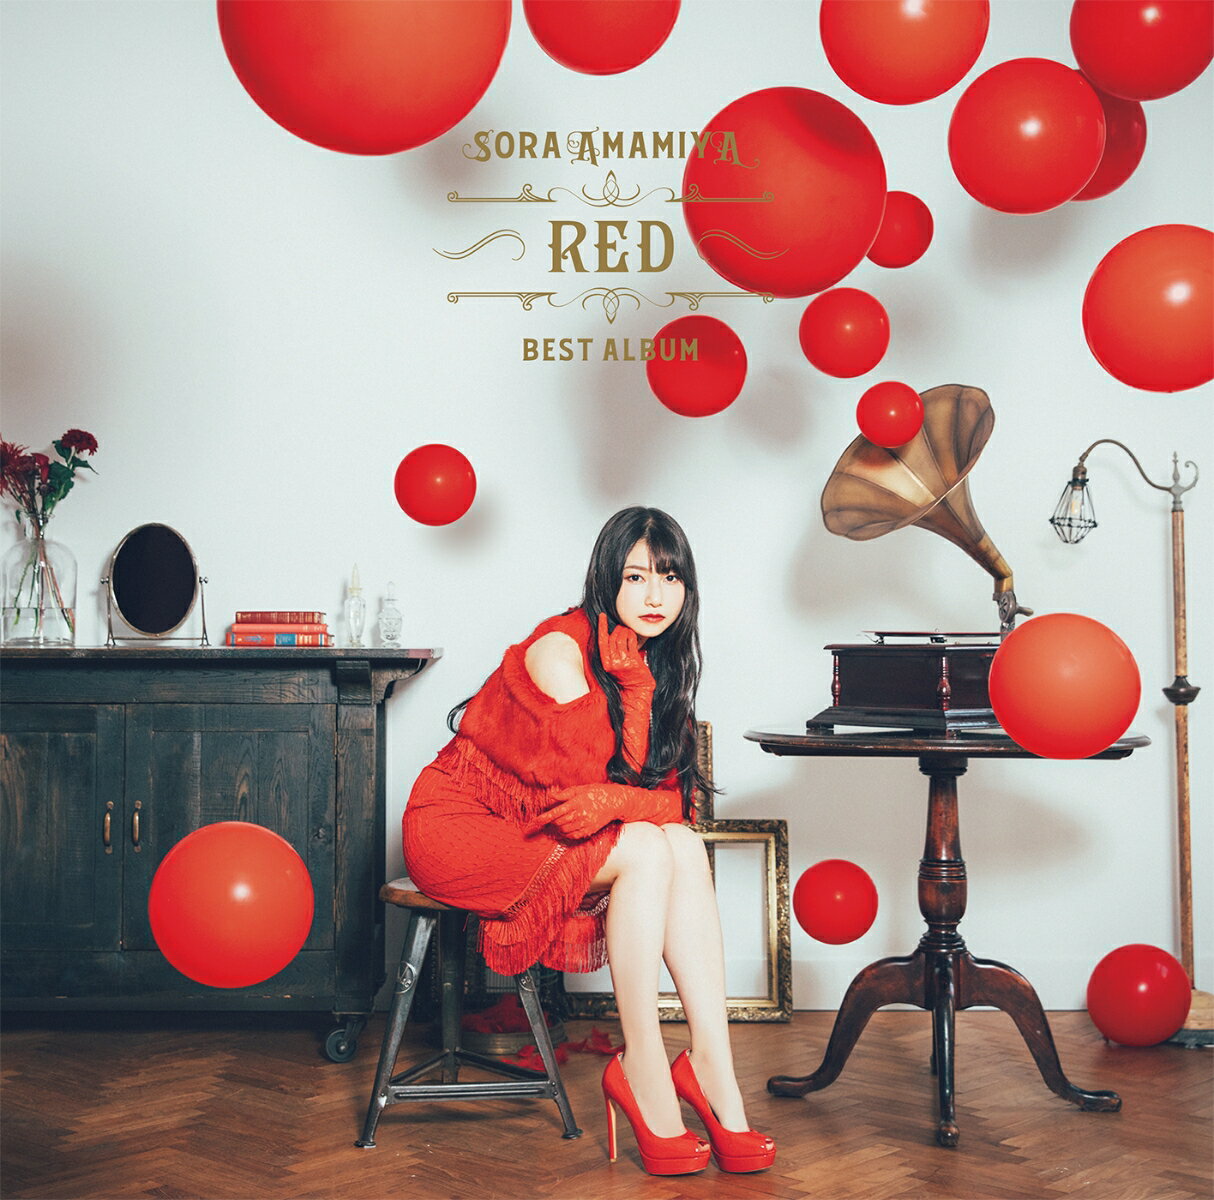 雨宮天 BEST ALBUM - RED - (通常盤初回仕様) 雨宮天